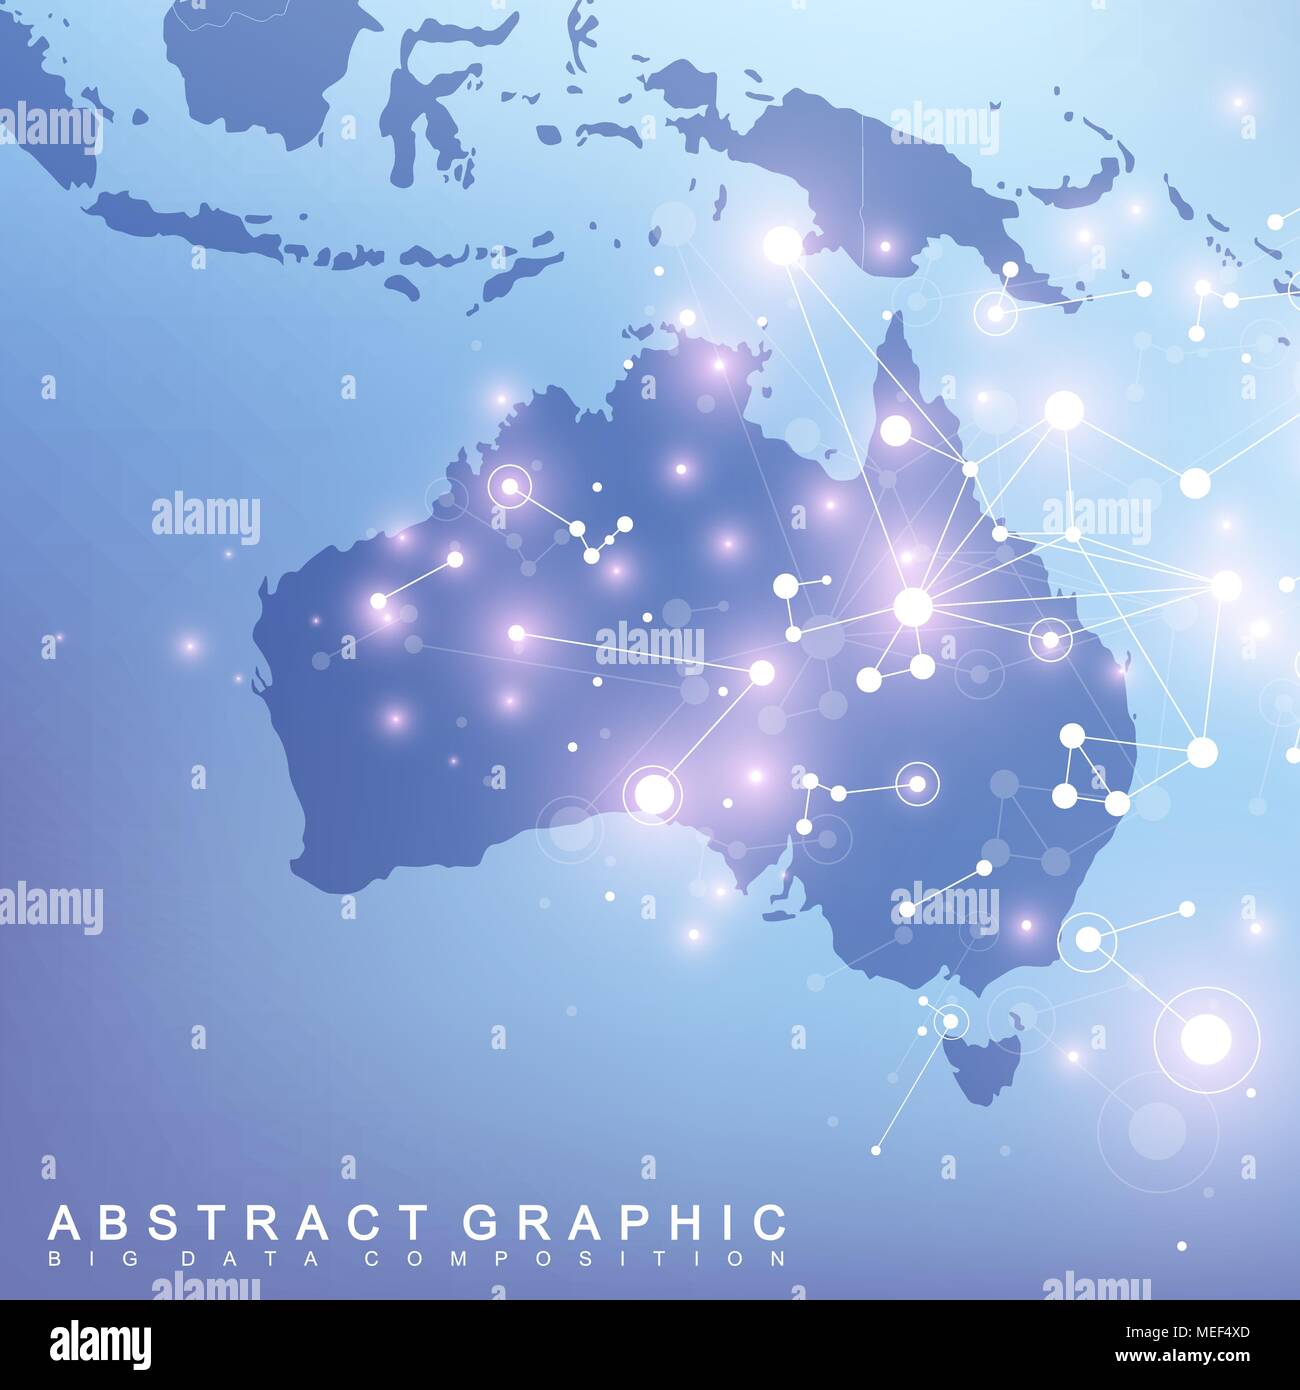 Zusammenfassung Karte von Australien Land global Network Connection. Vector Hintergrund Technologie futuristische Plexus Stock Vektor